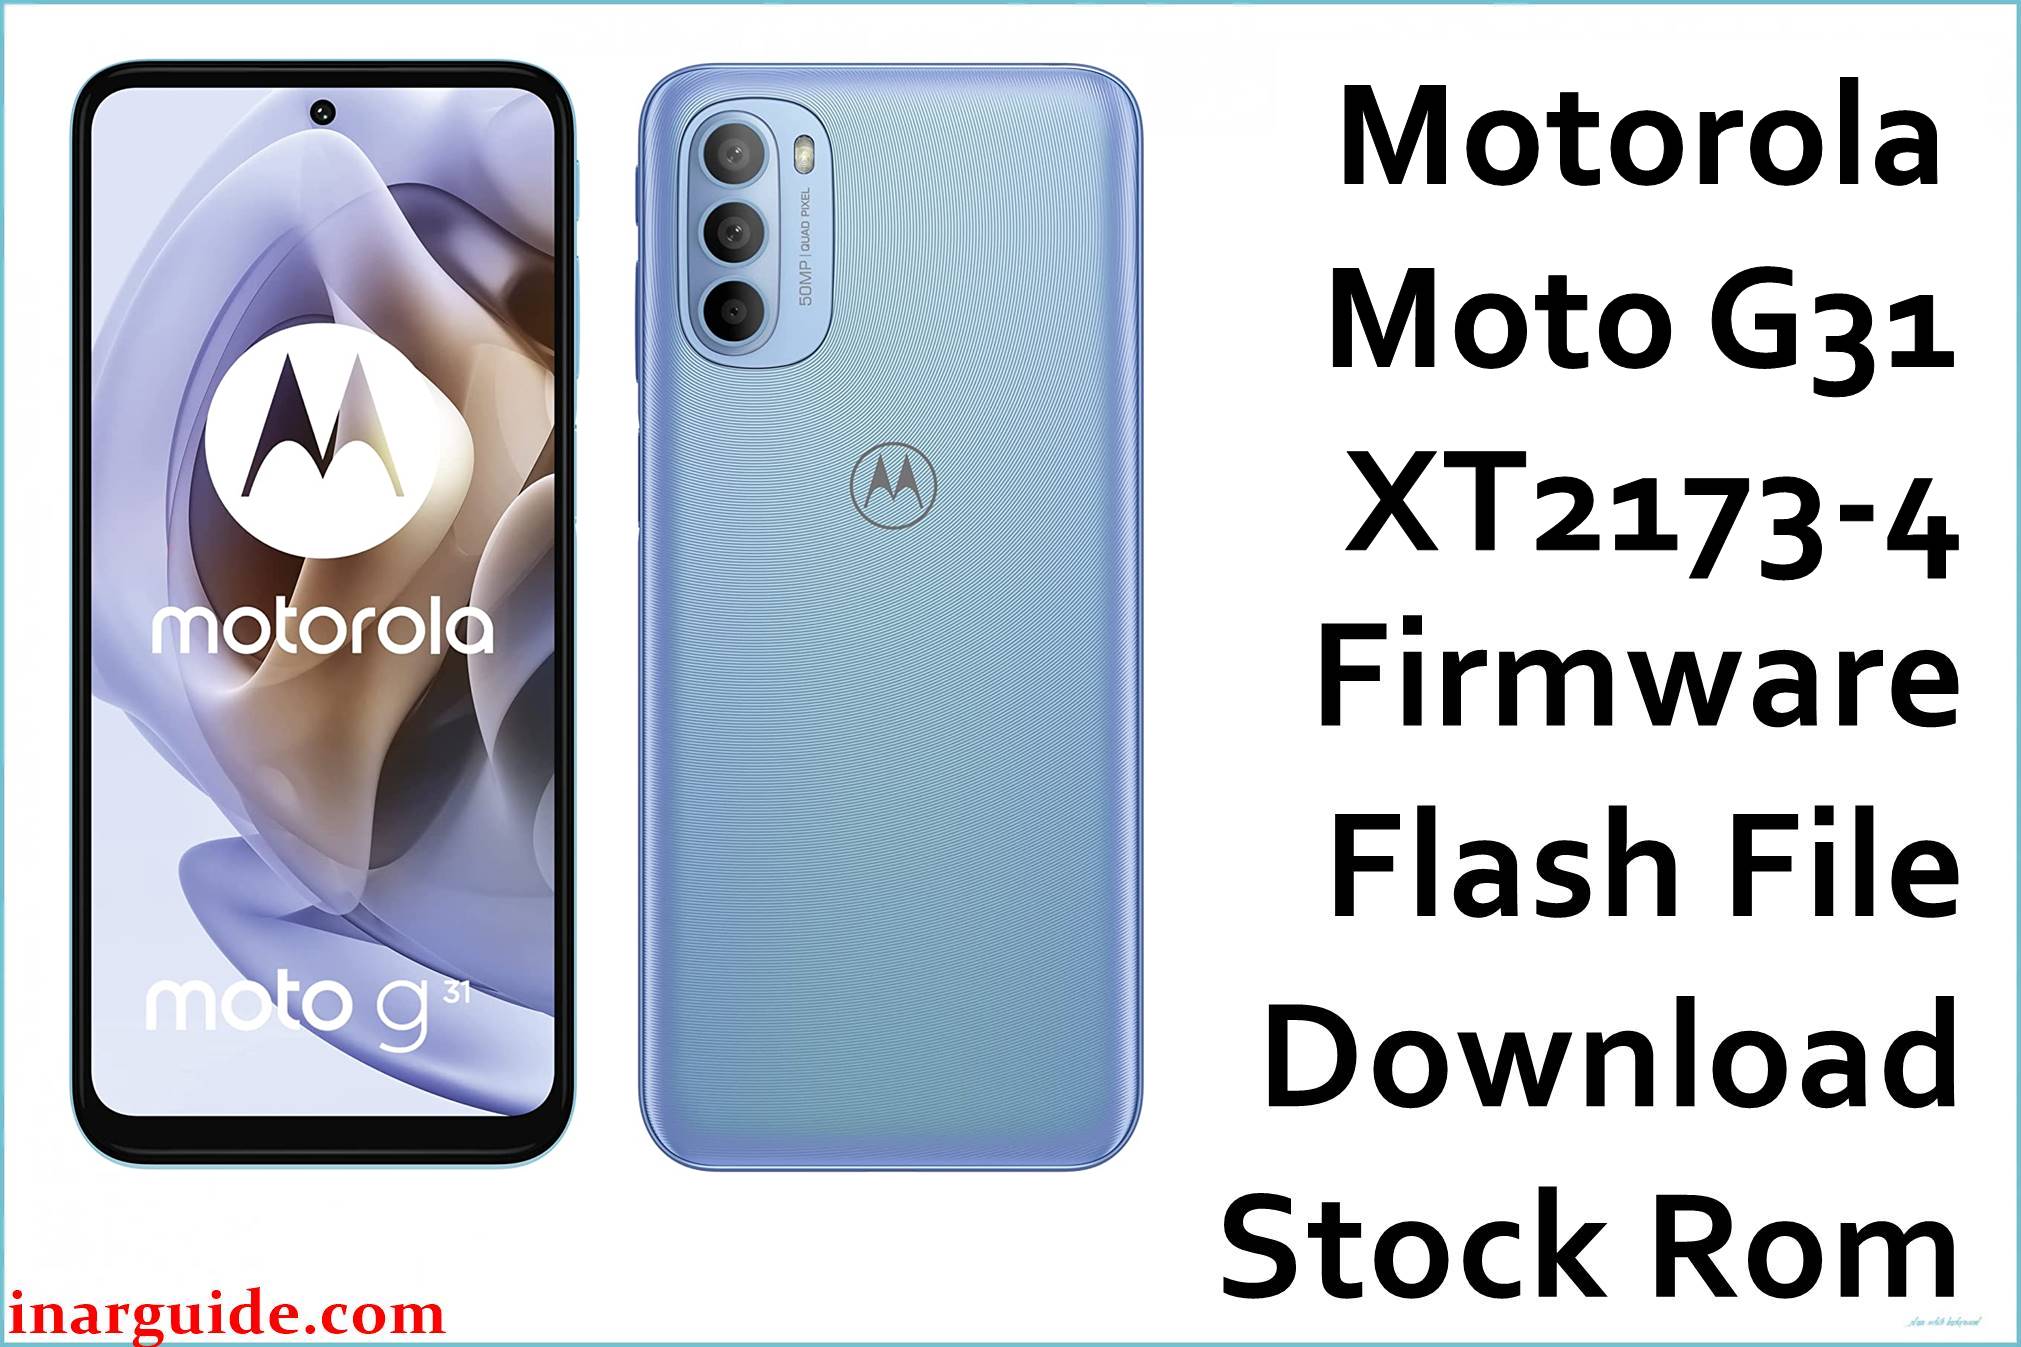 Motorola Moto G31 XT2173-4